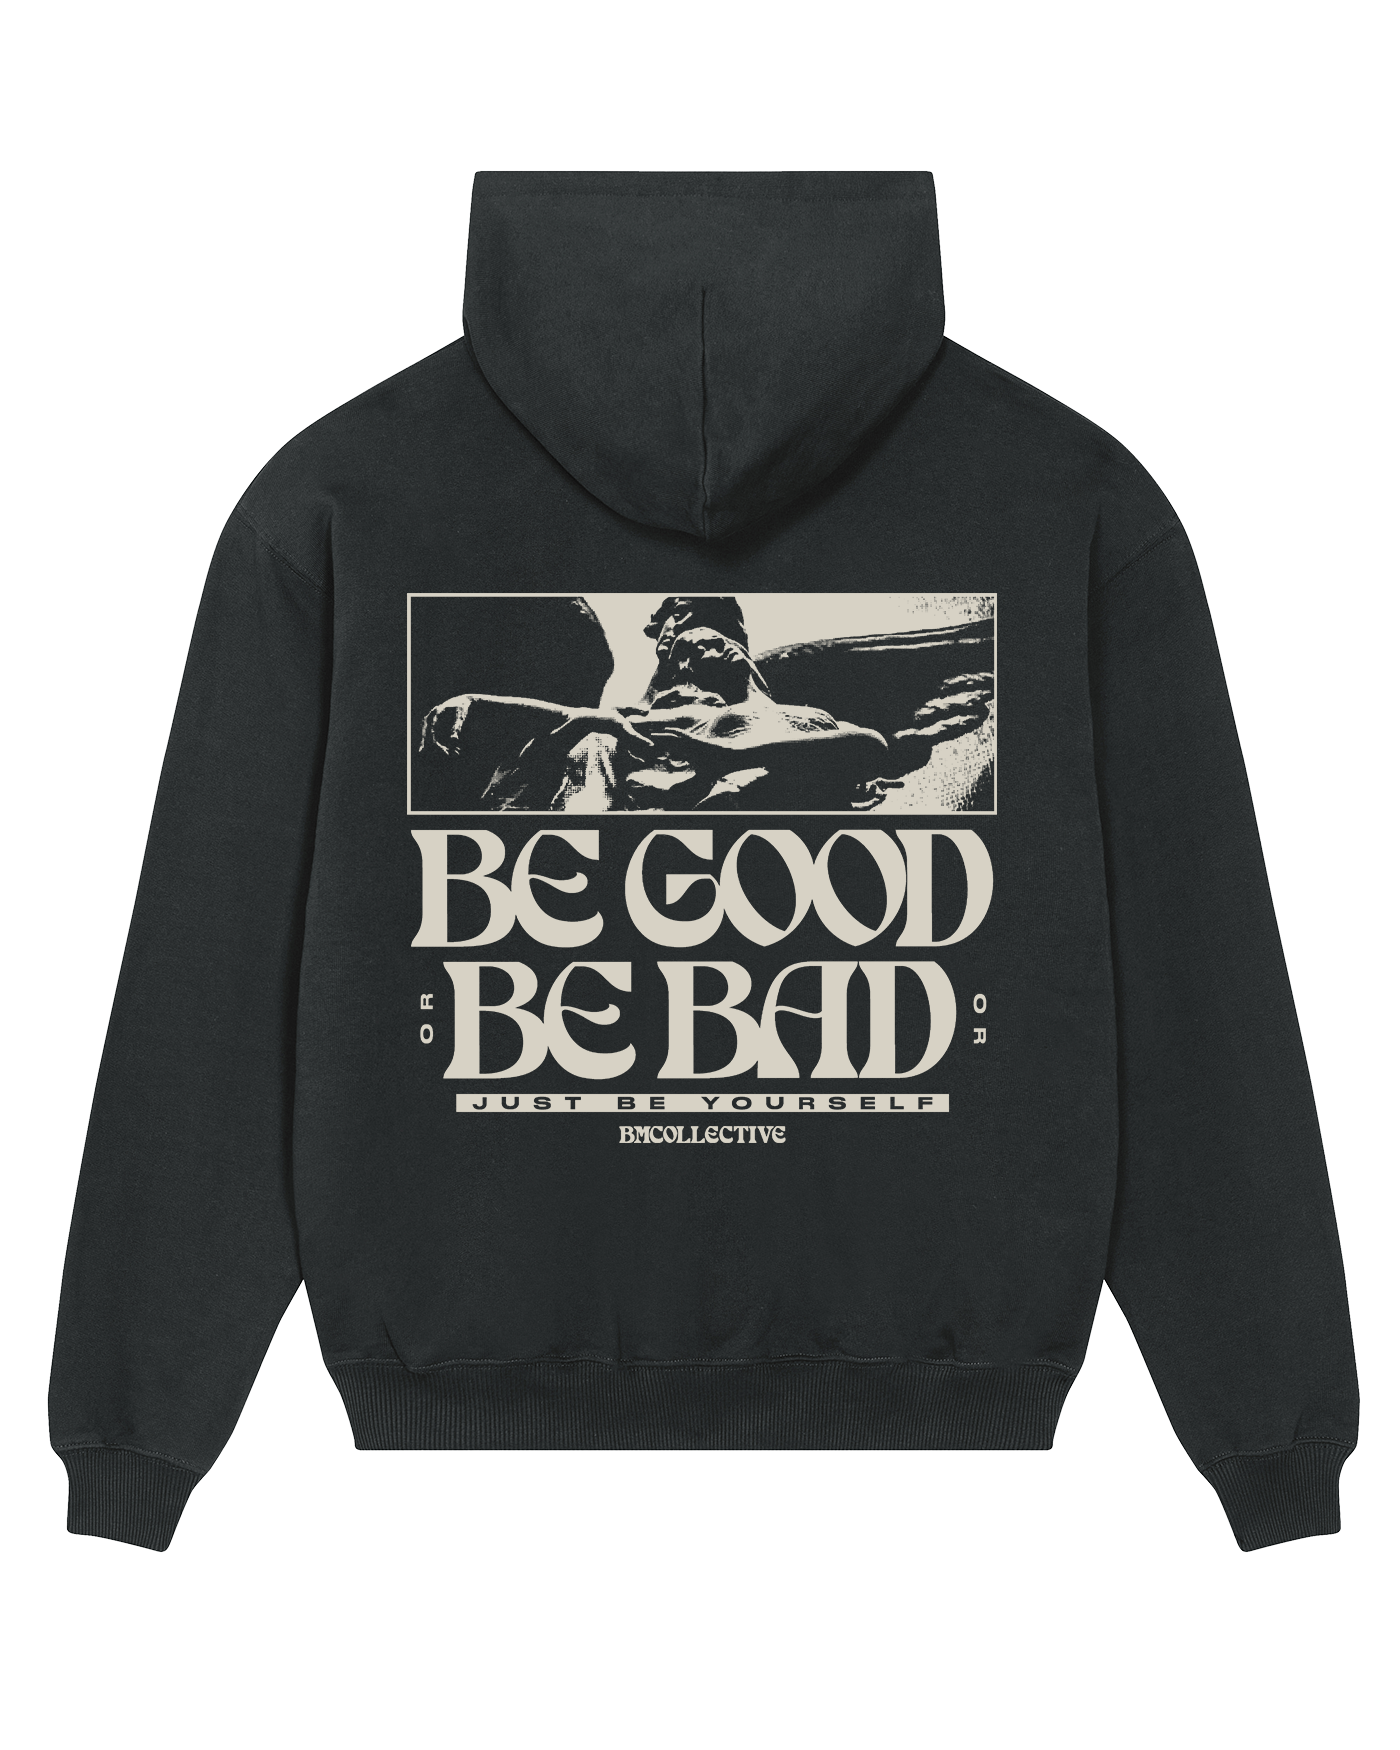 Be Good Be Bad Black Hoodie